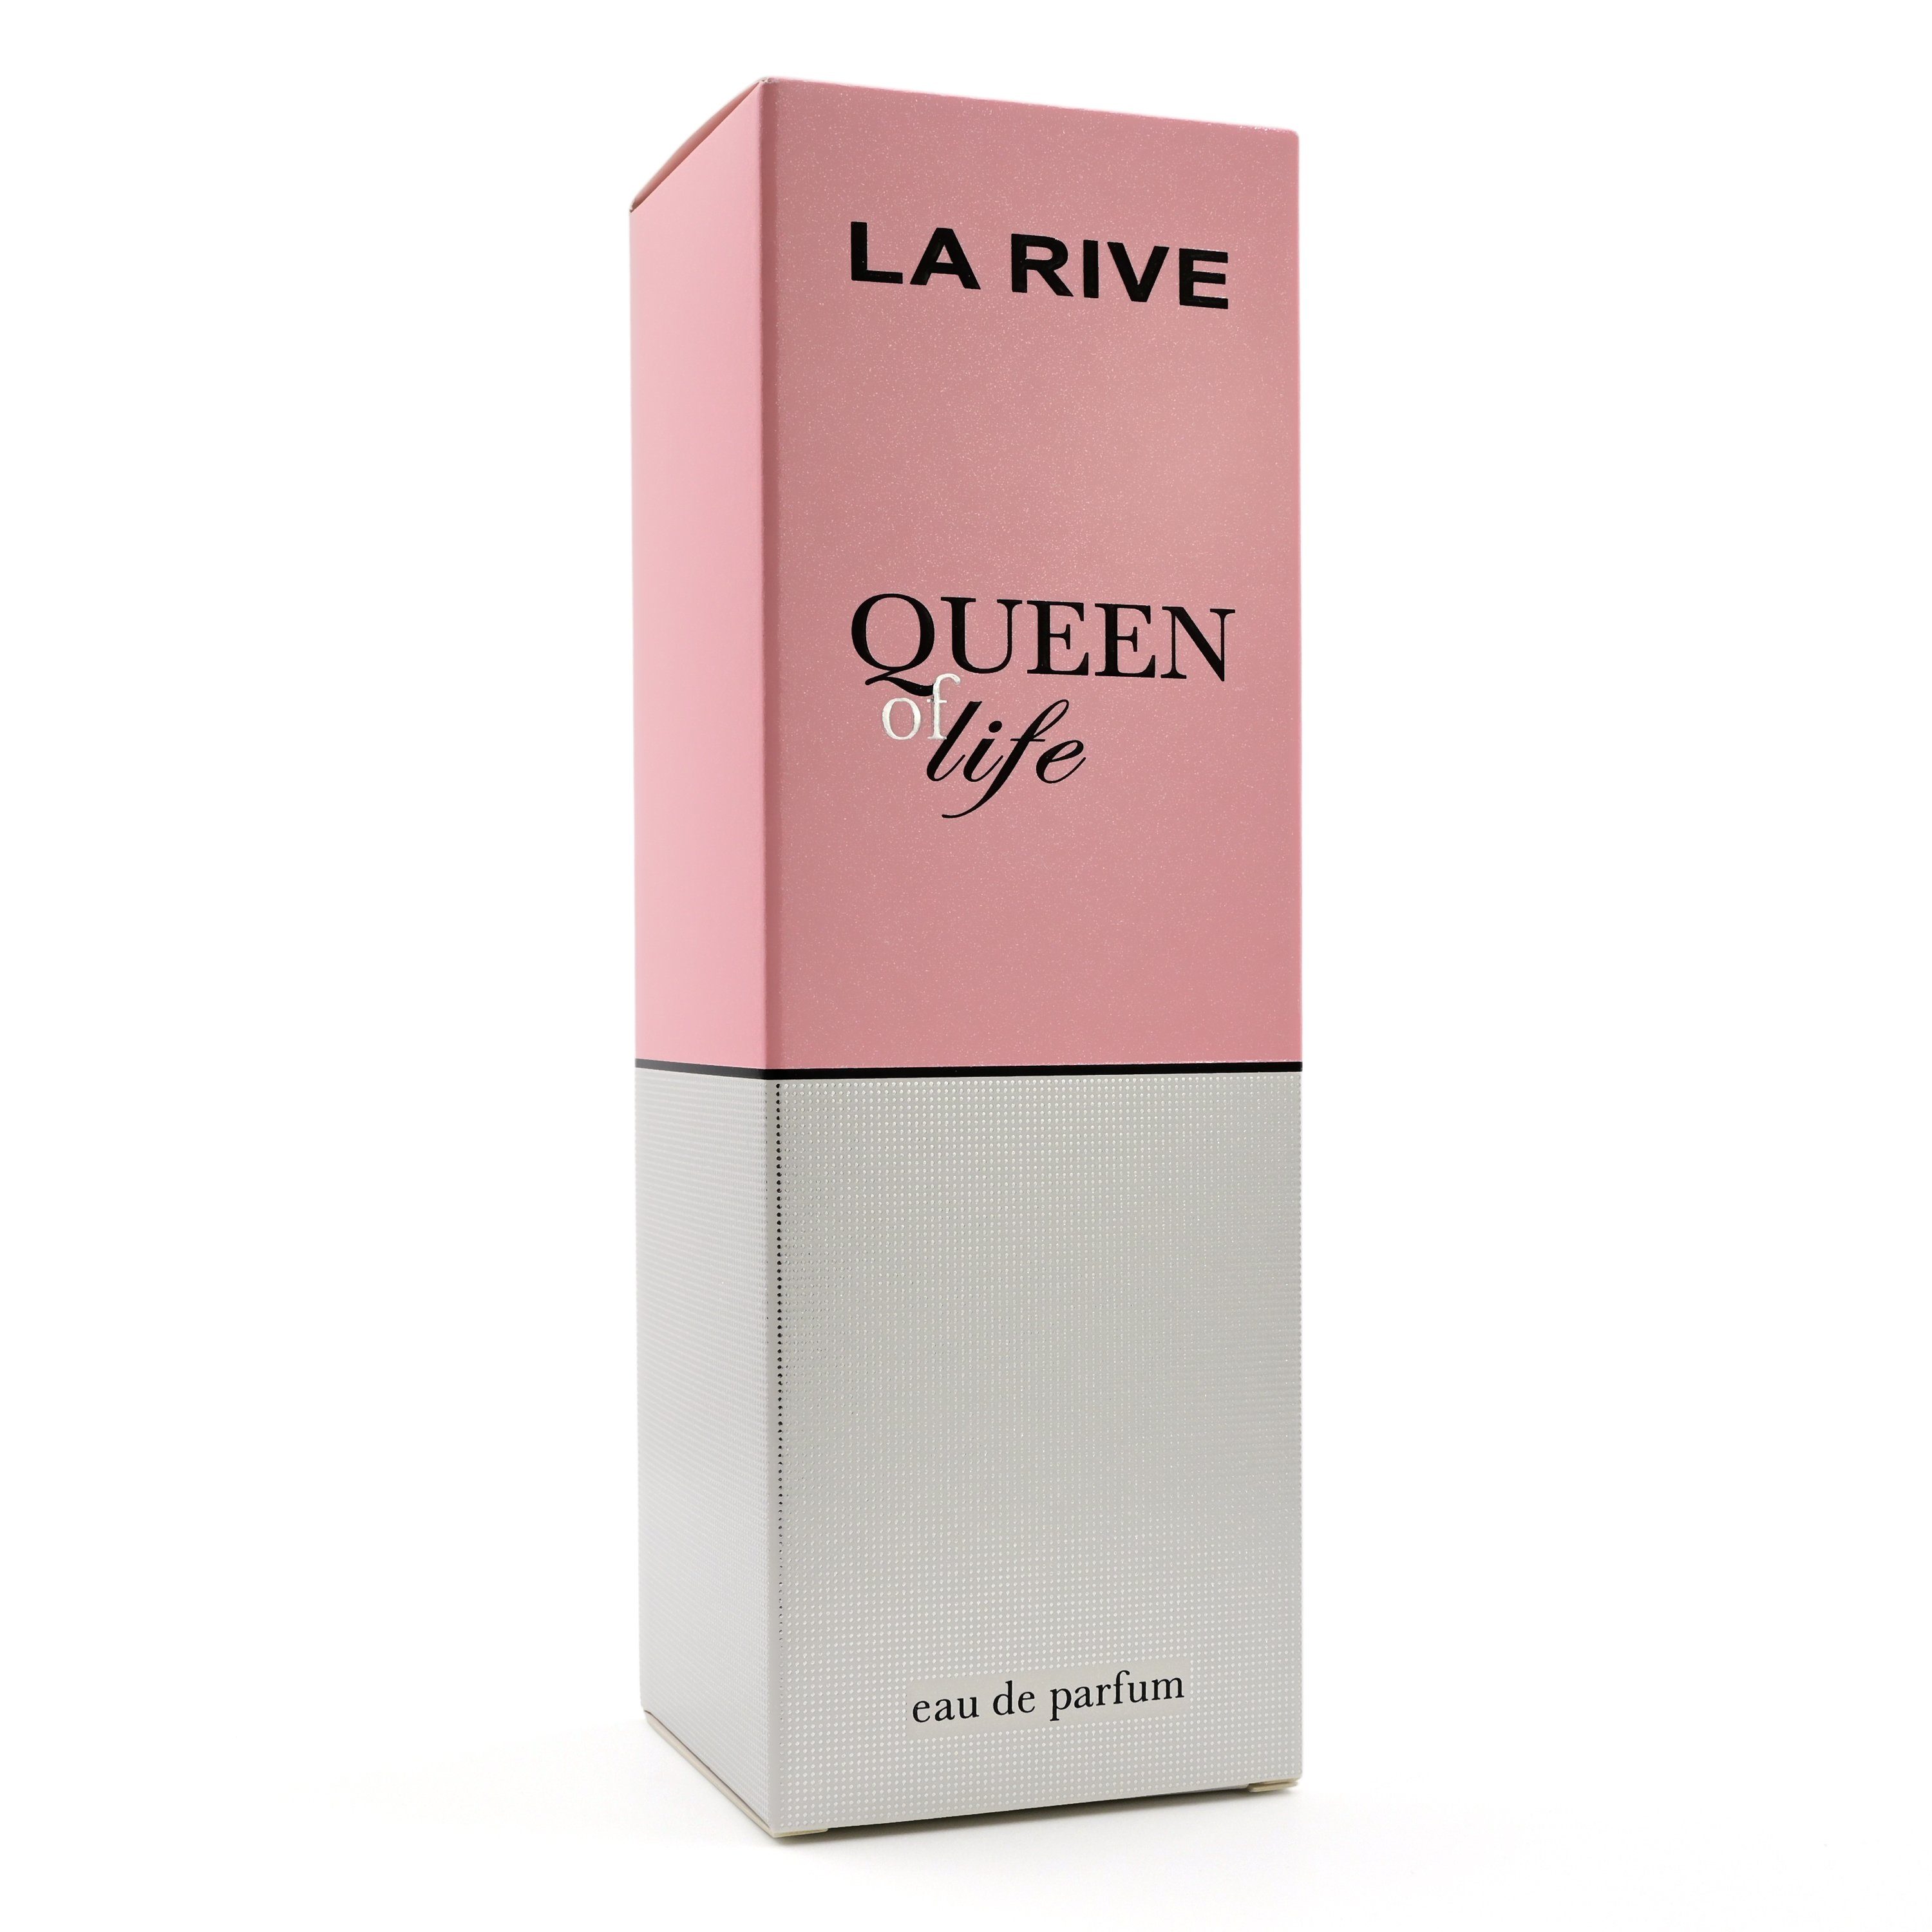 La Rive Eau de of Eau 75 - - Parfum LA RIVE de Life Queen ml Parfum